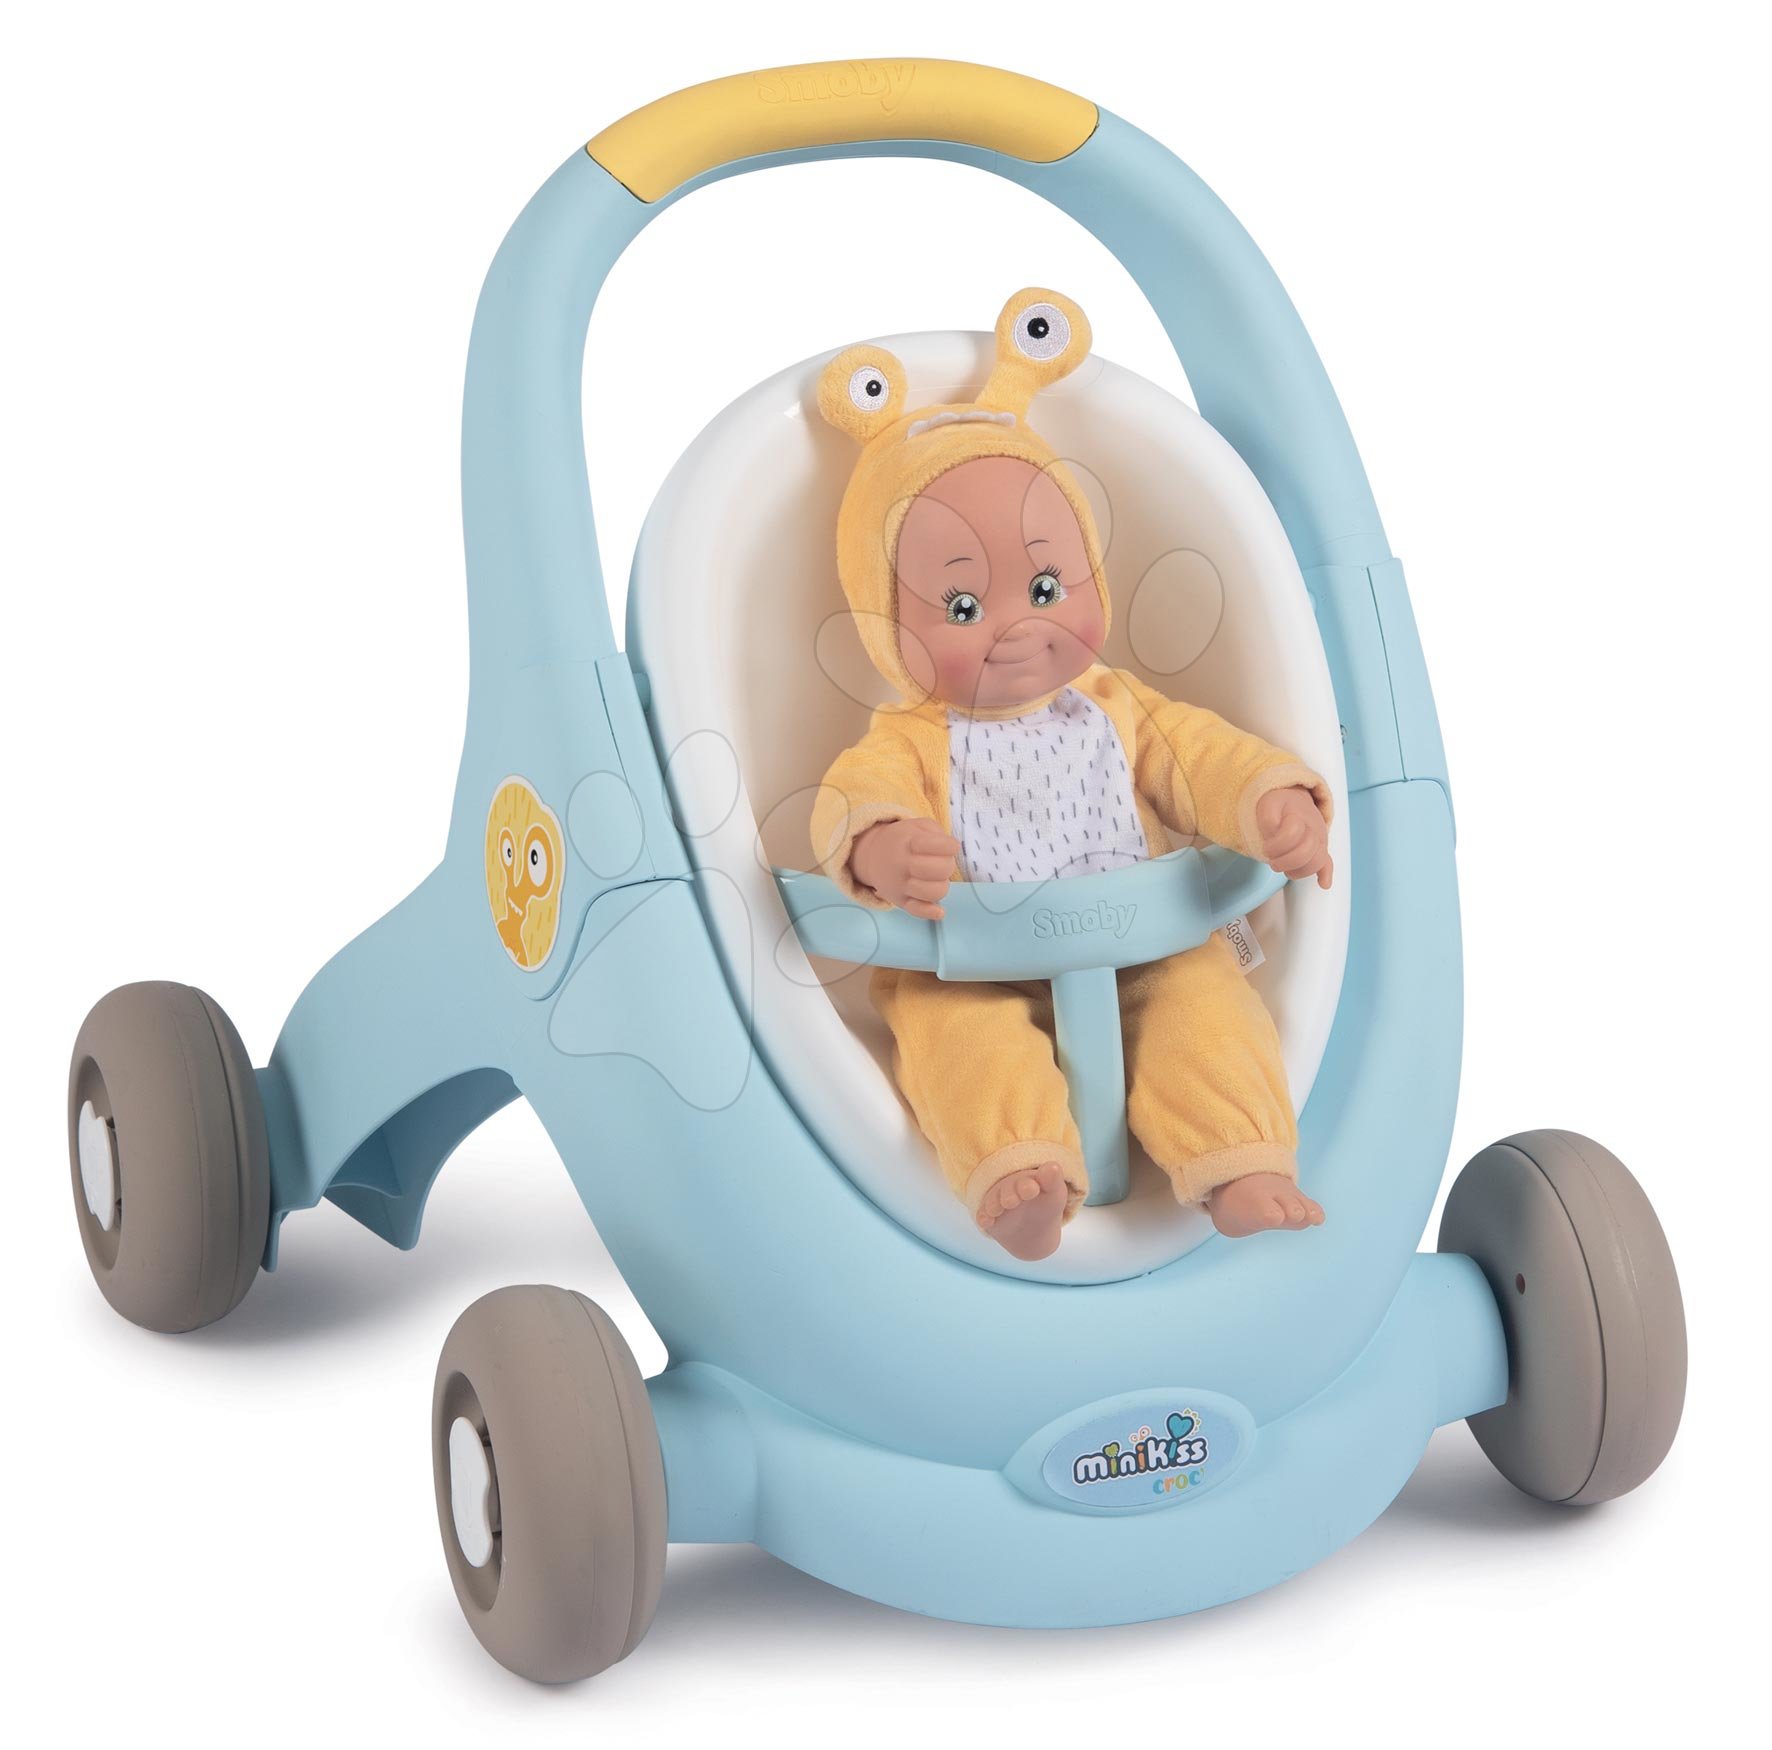 E-shop Chodítko a kočík pre bábiku Croc Baby Walker MiniKiss 3in1 Smoby s brzdou a bezpečnostným pásom od 12 mes